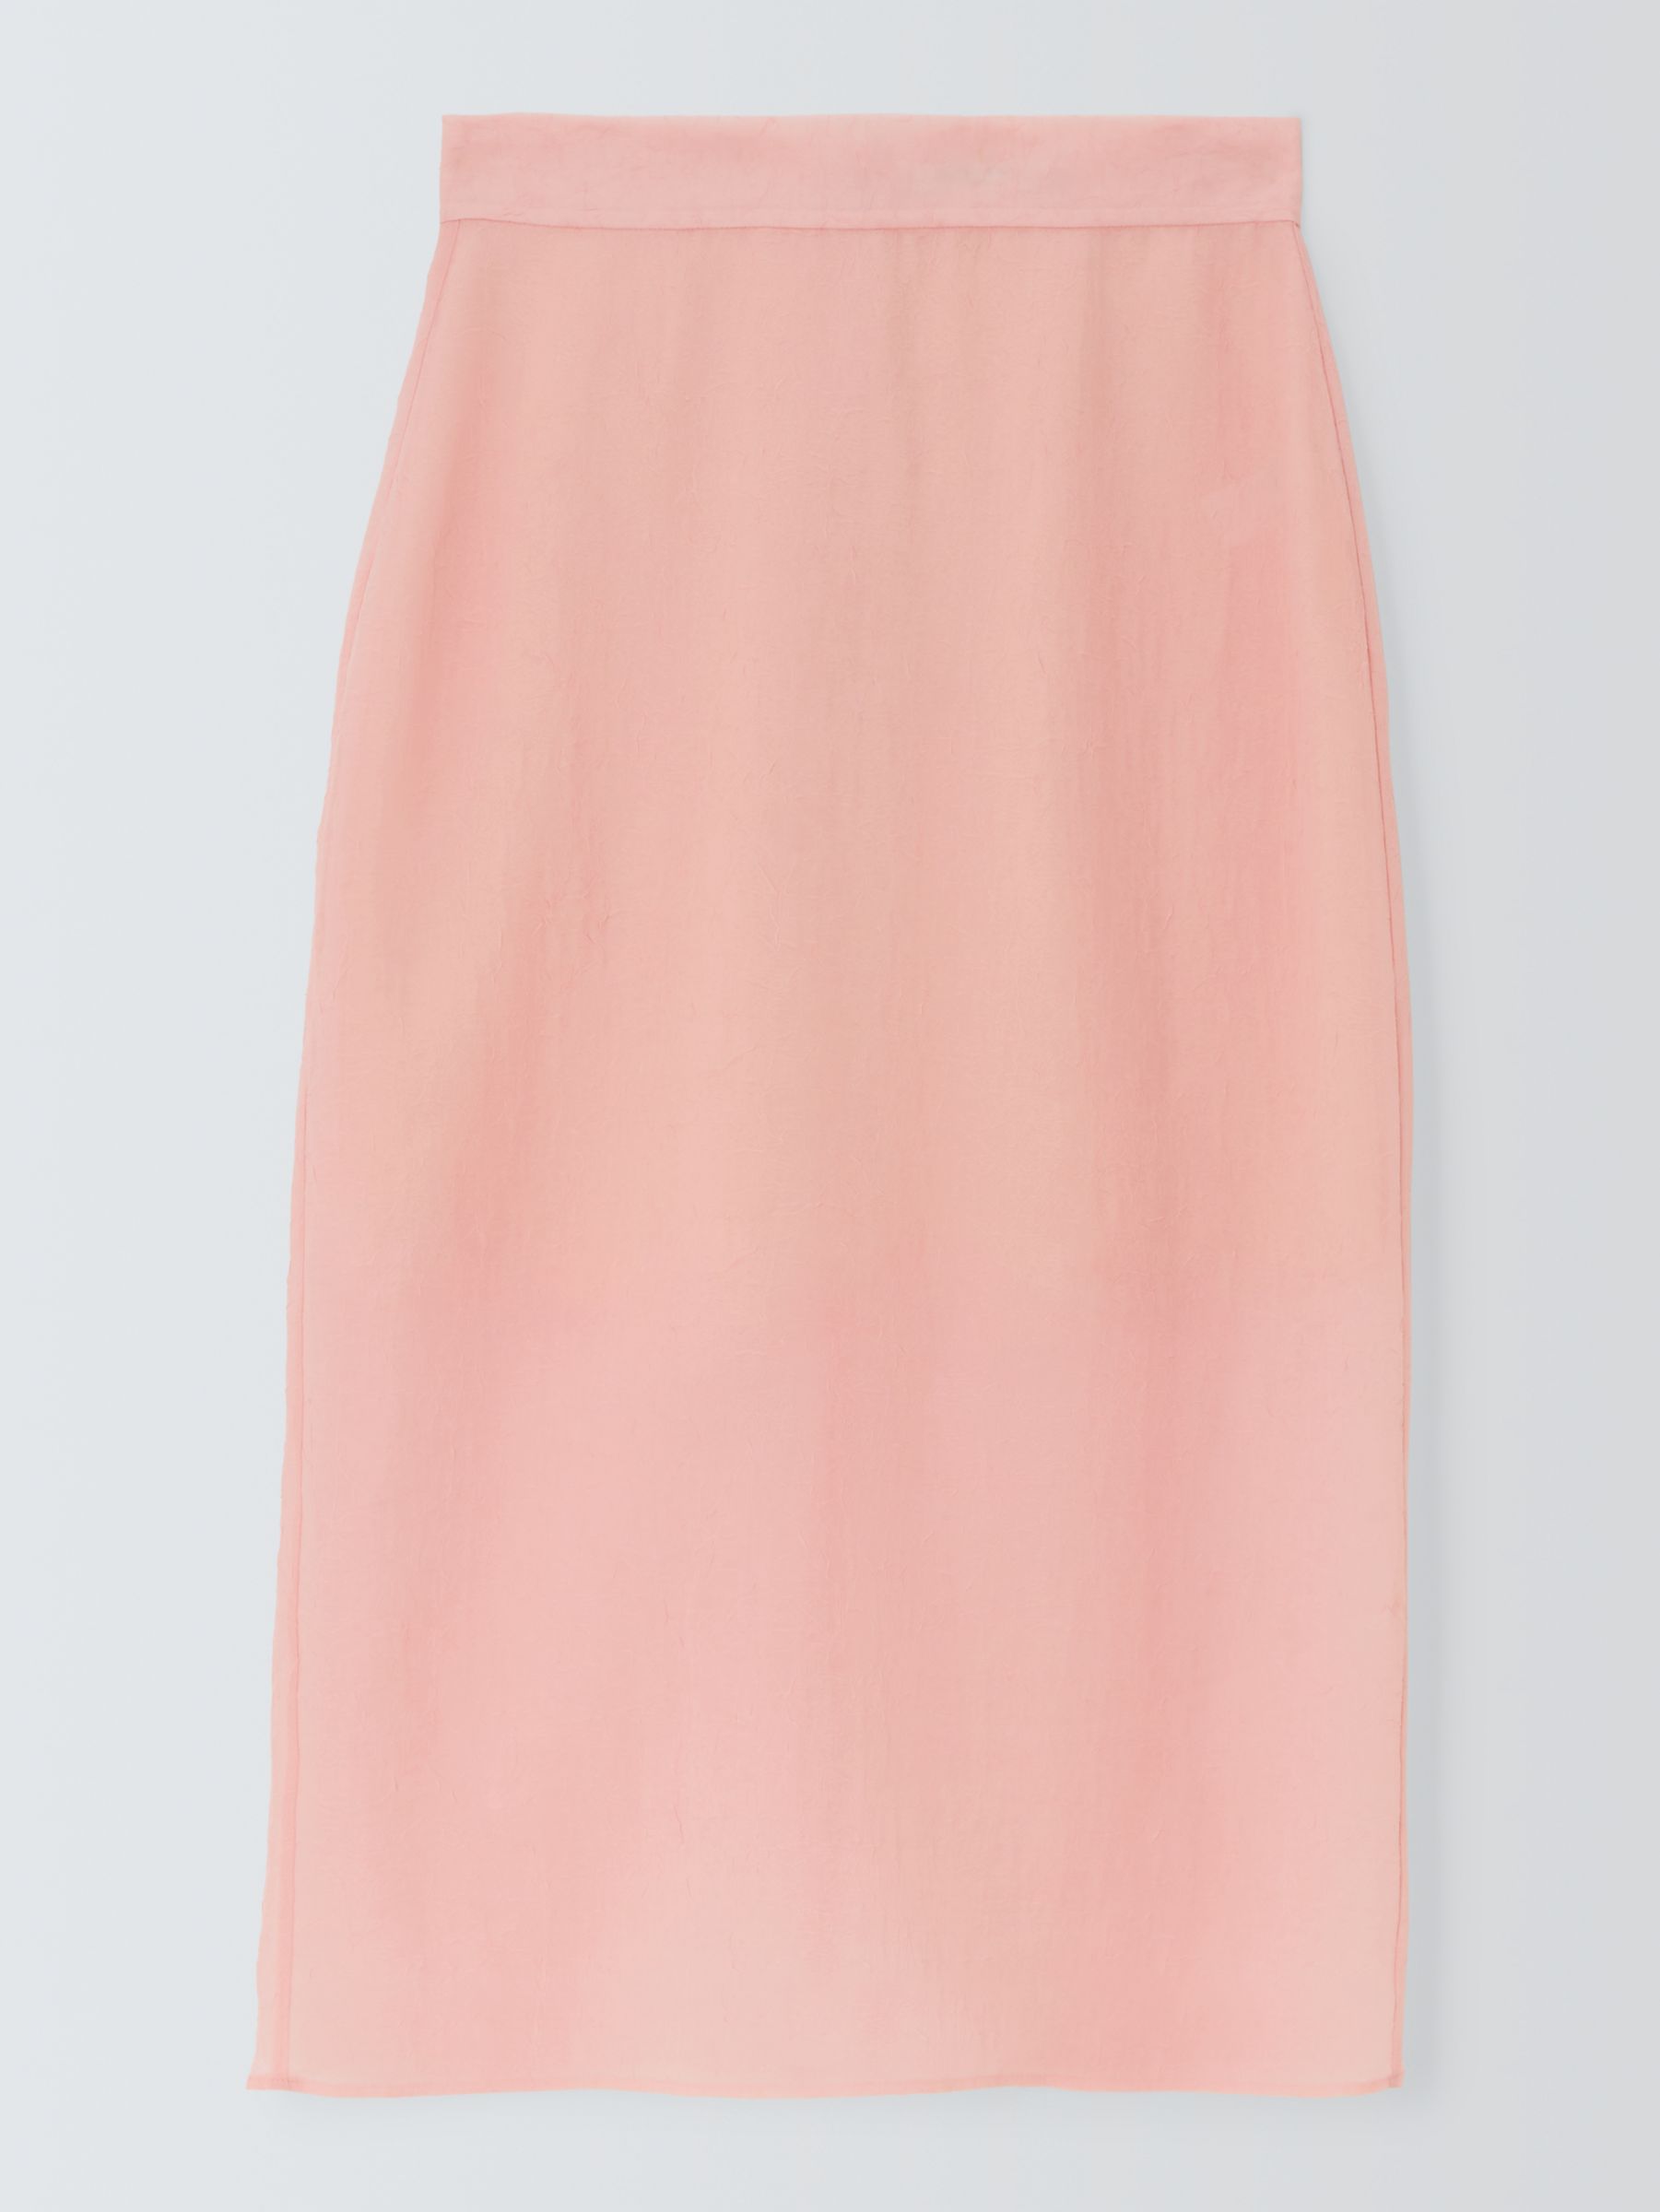 John Lewis Sheer Skirt, Pale Pink, 10